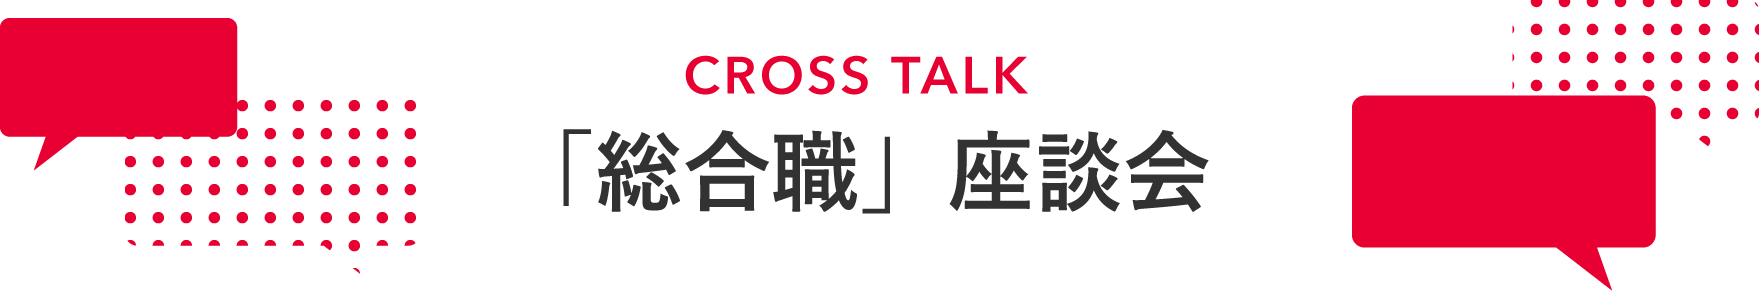 CROSS TALK 「総合職」座談会